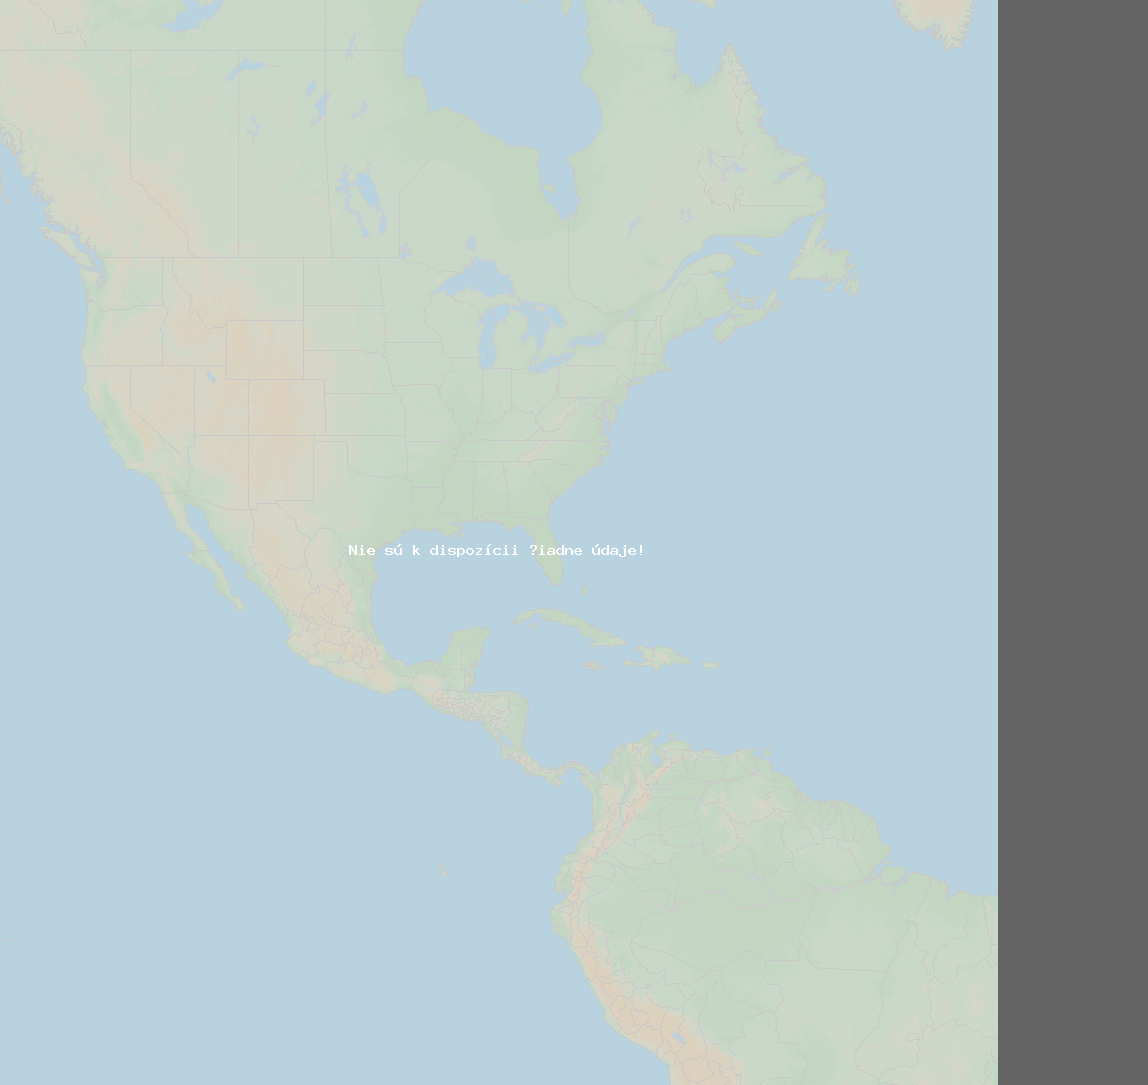 Pomer bleskov (Stanica St George) North America 2024 Január